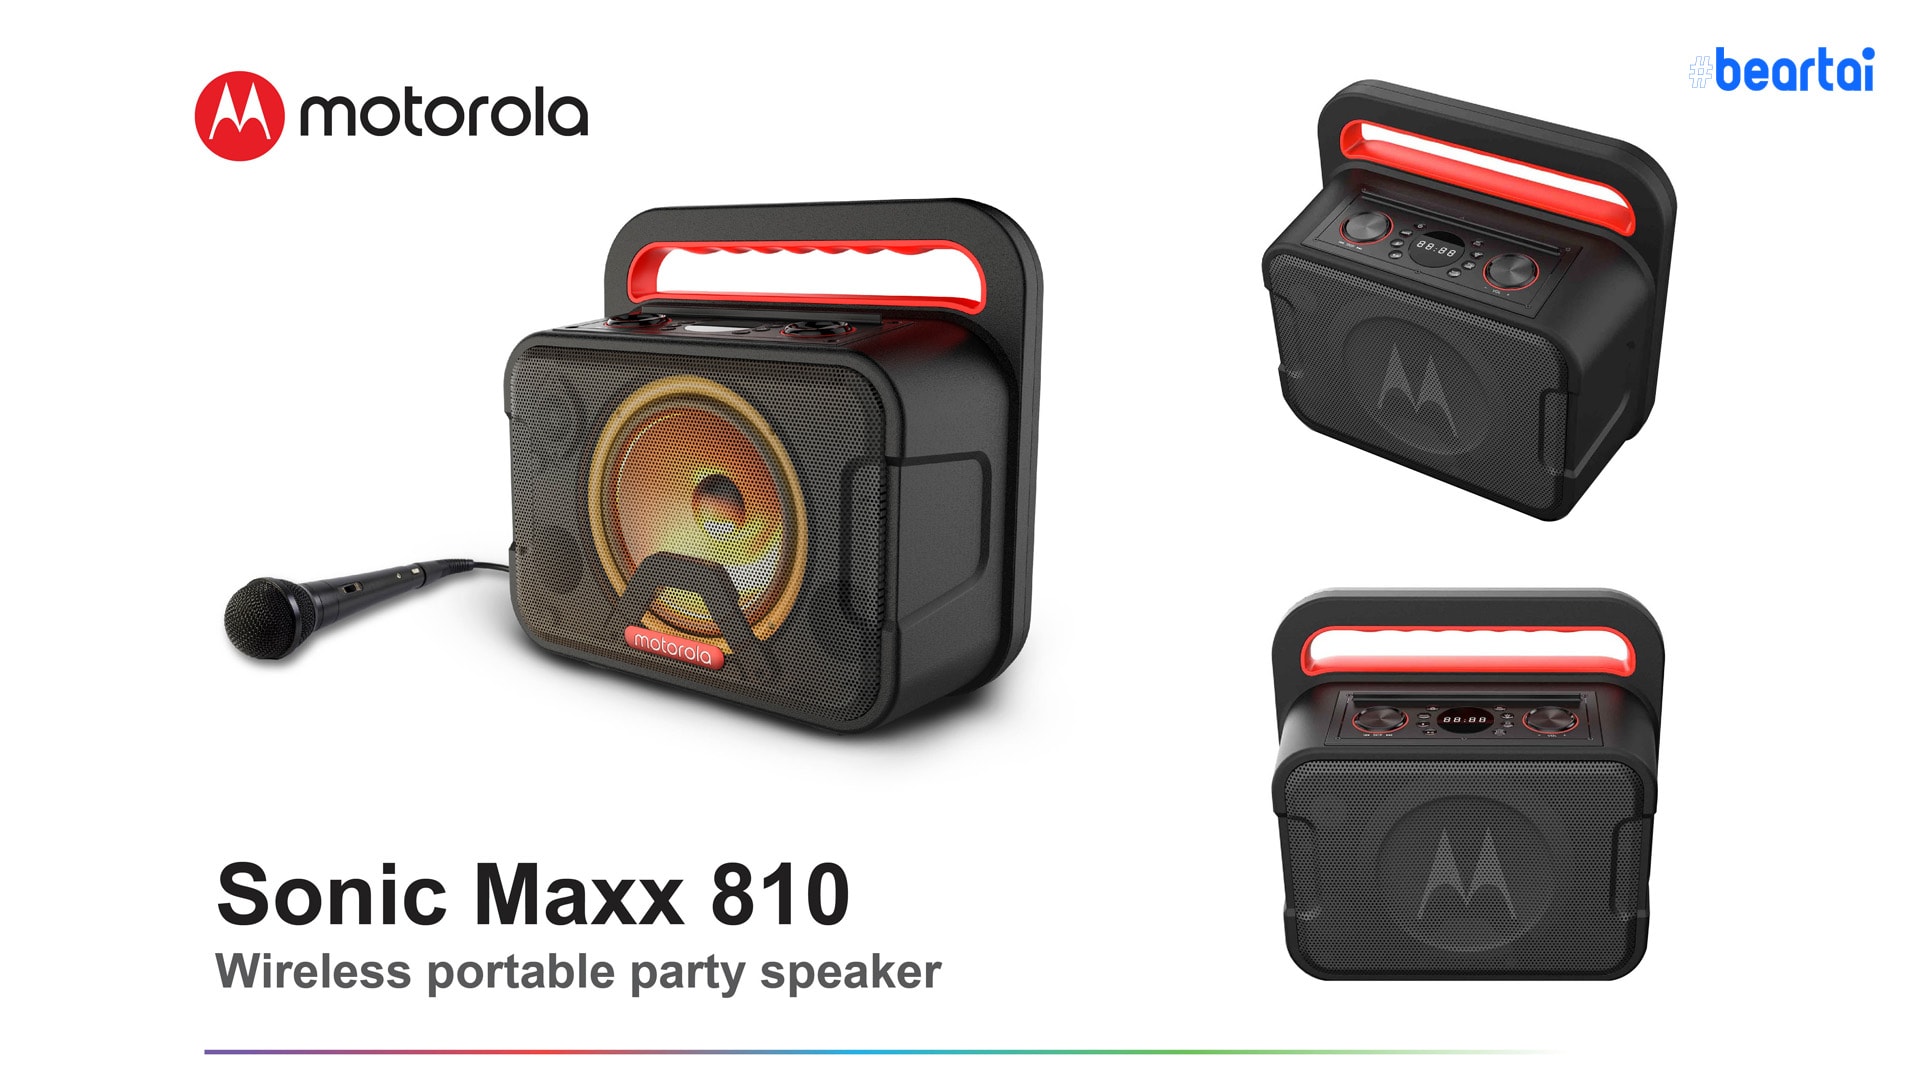 อาร์ทีบีฯ ส่งลำโพง Motorola แบบไร้สาย รุ่น Sonic Maxx 810 พกพาสะดวก เอาใจสายปาร์ตี้ขาแดนซ์